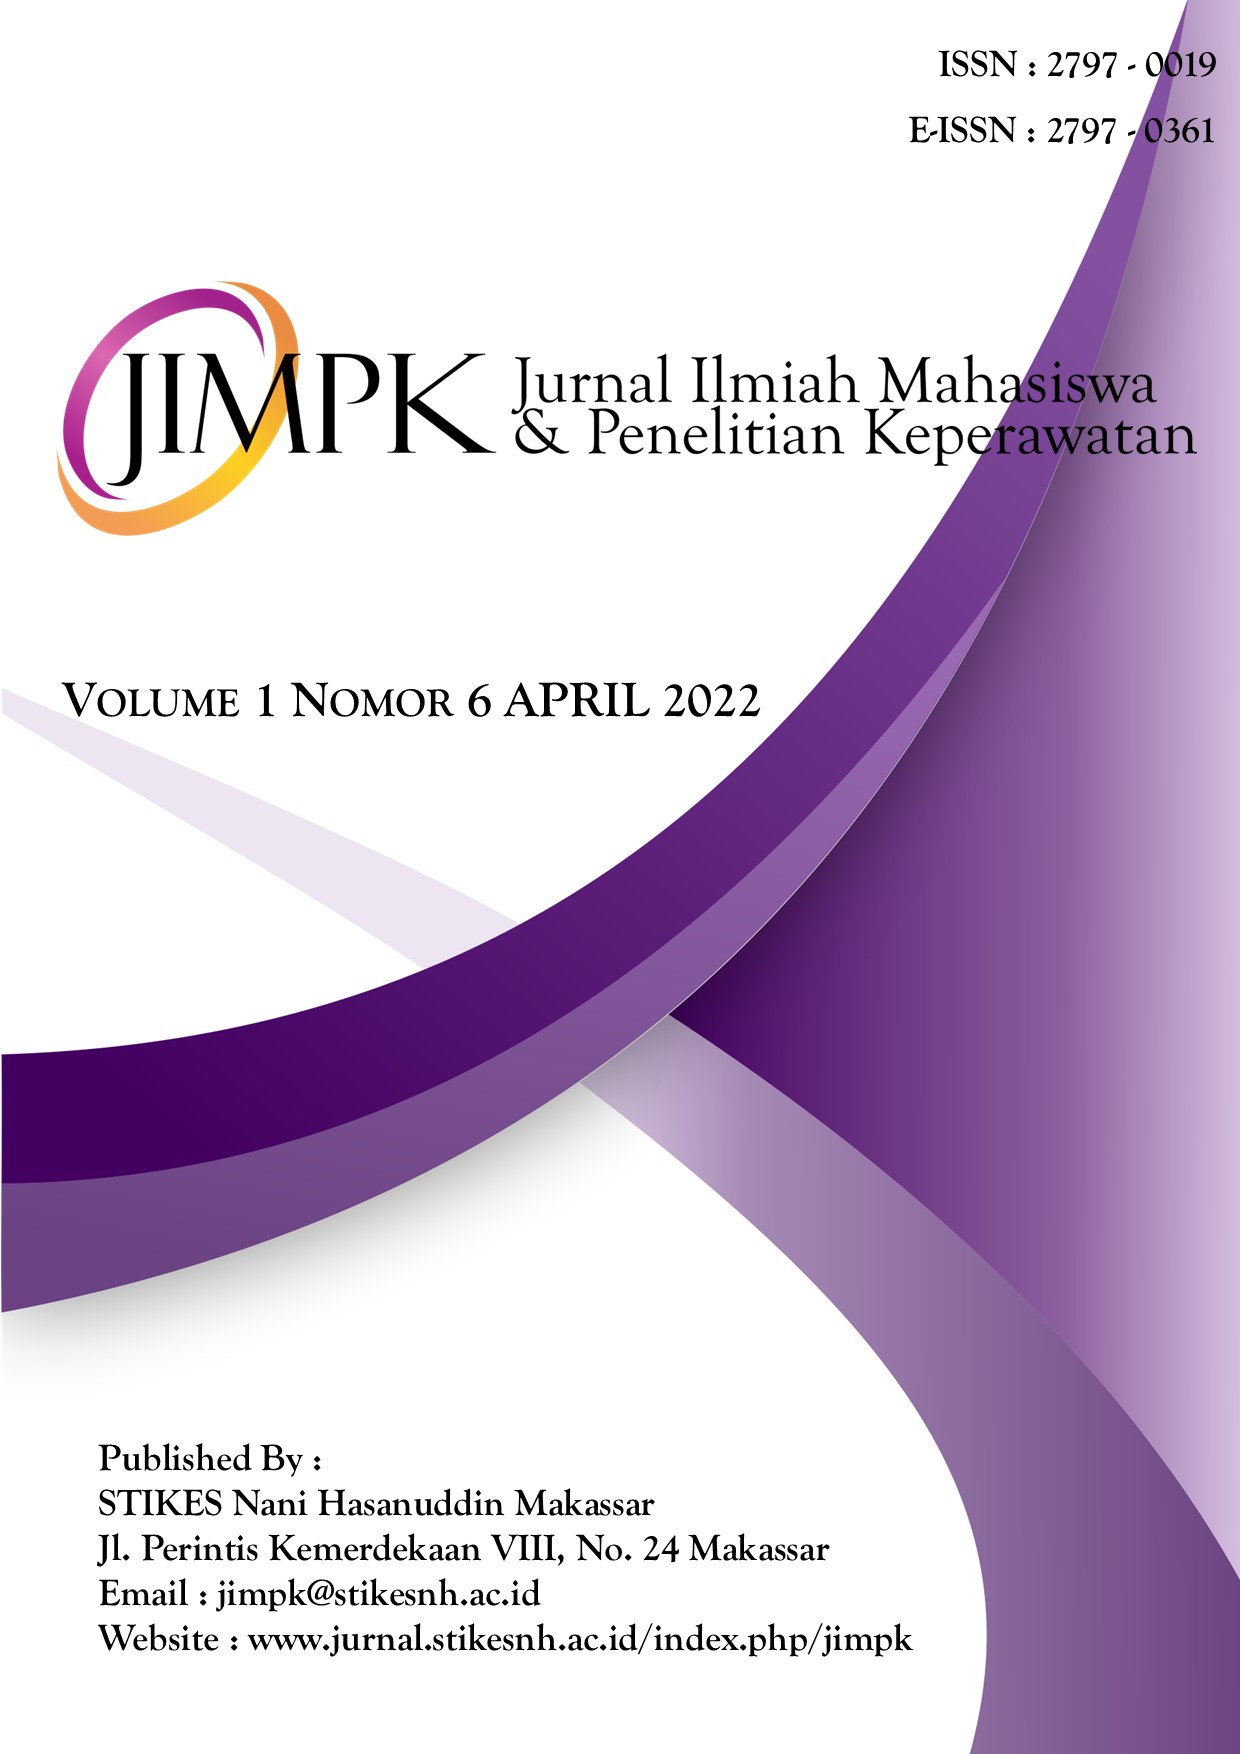 					View Vol. 1 No. 6 (2022): Jurnal Ilmiah Mahasiswa & Penelitian Keperawatan
				